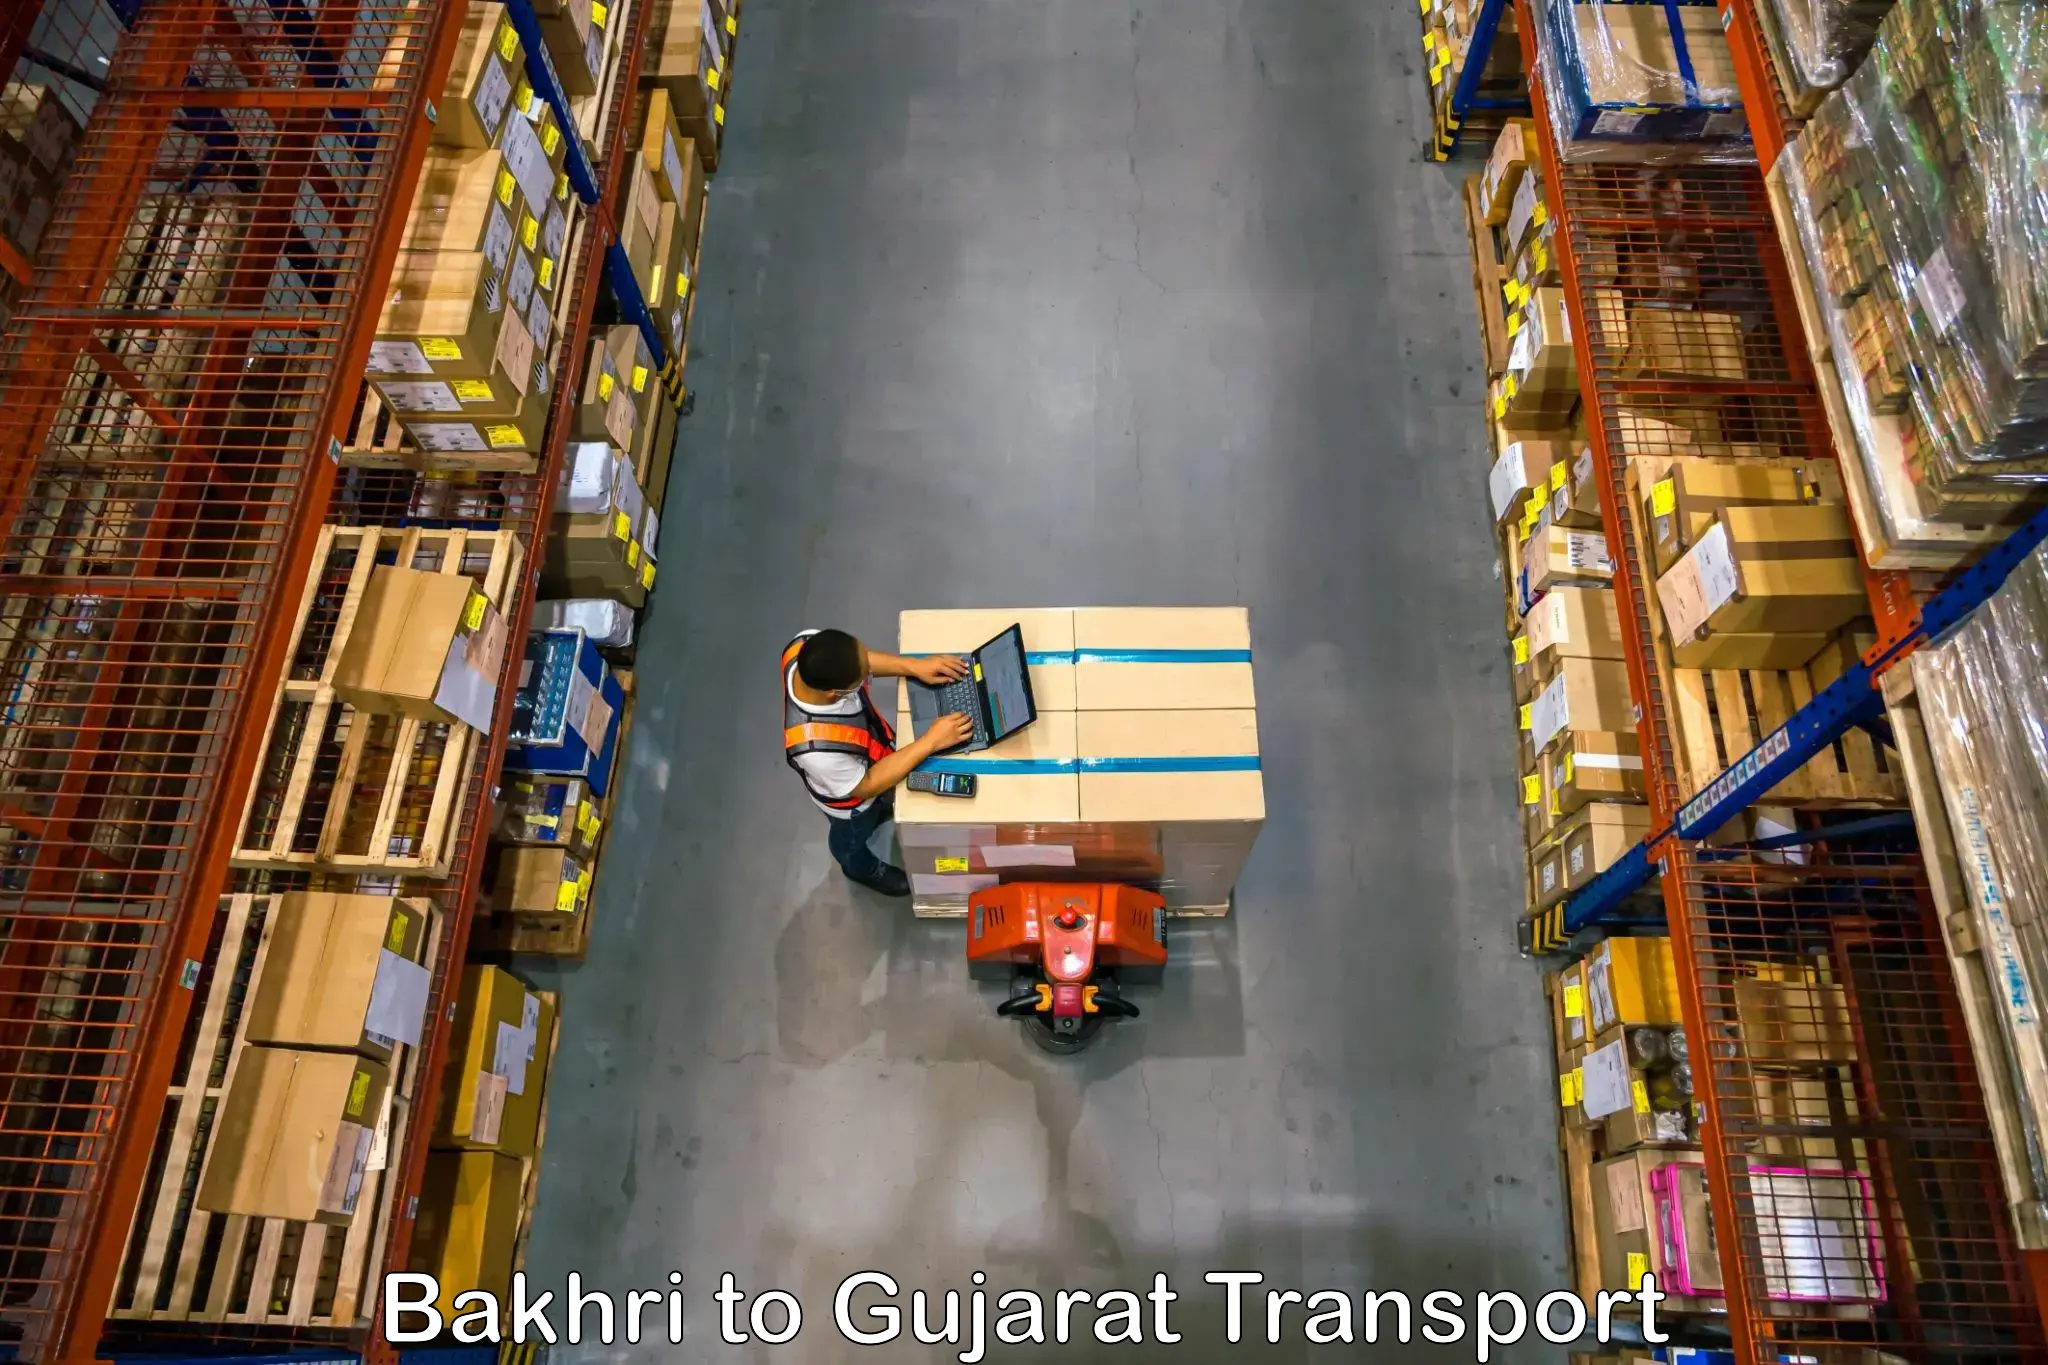 Online transport service Bakhri to IIIT Surat